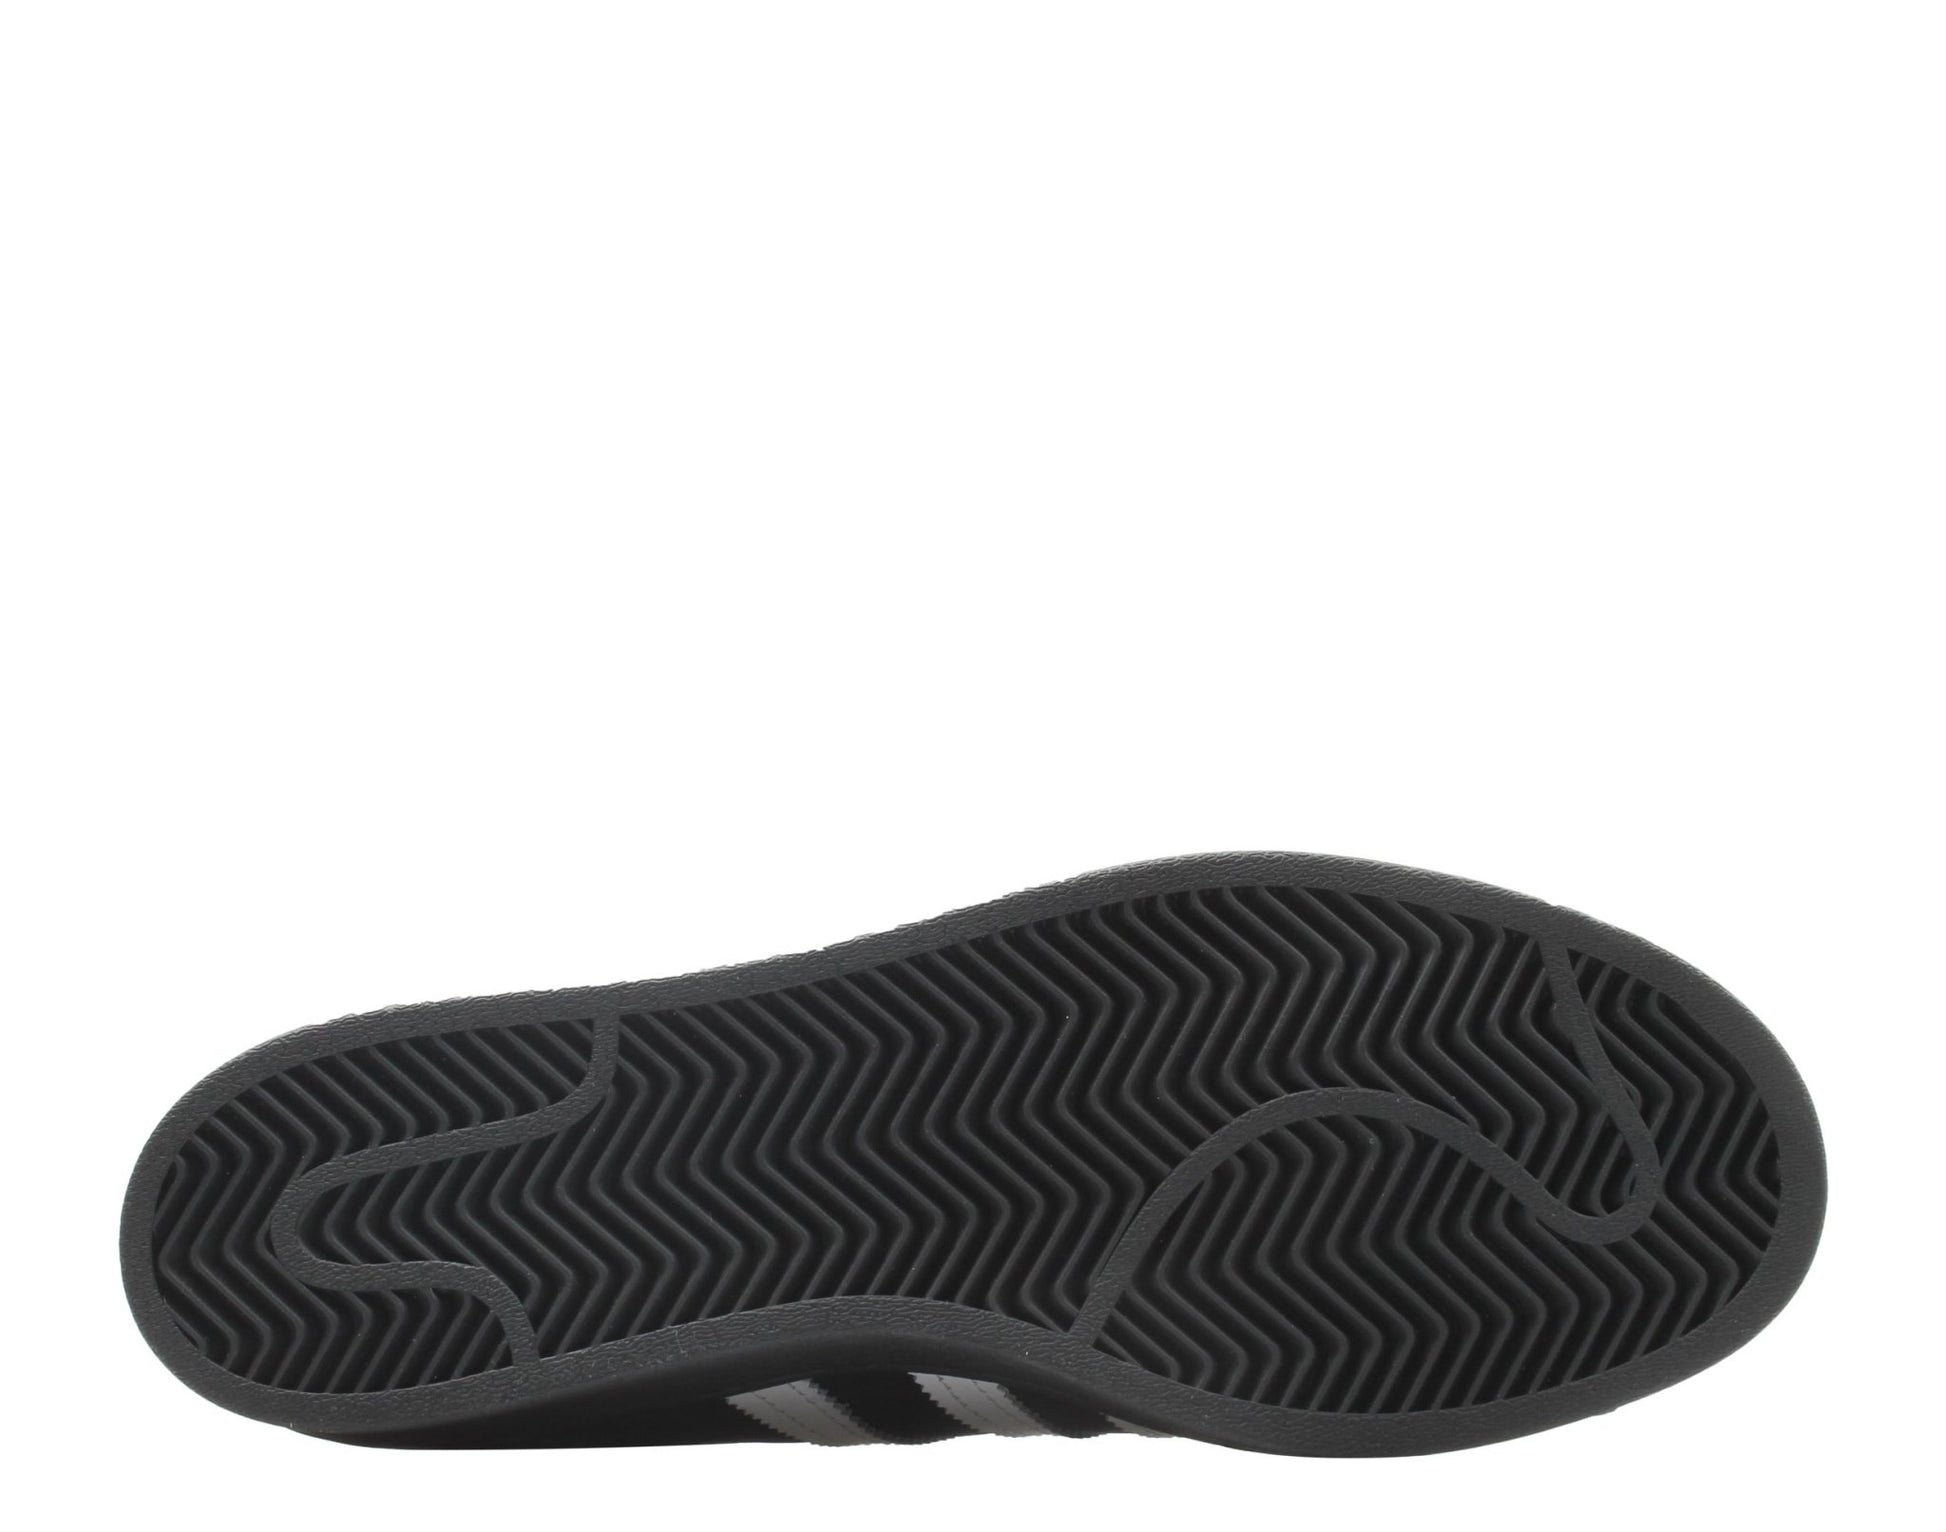 Adidas Originals Superstar ADV Black/White/Gold Men's Basketball Shoes FV0321 - Becauze